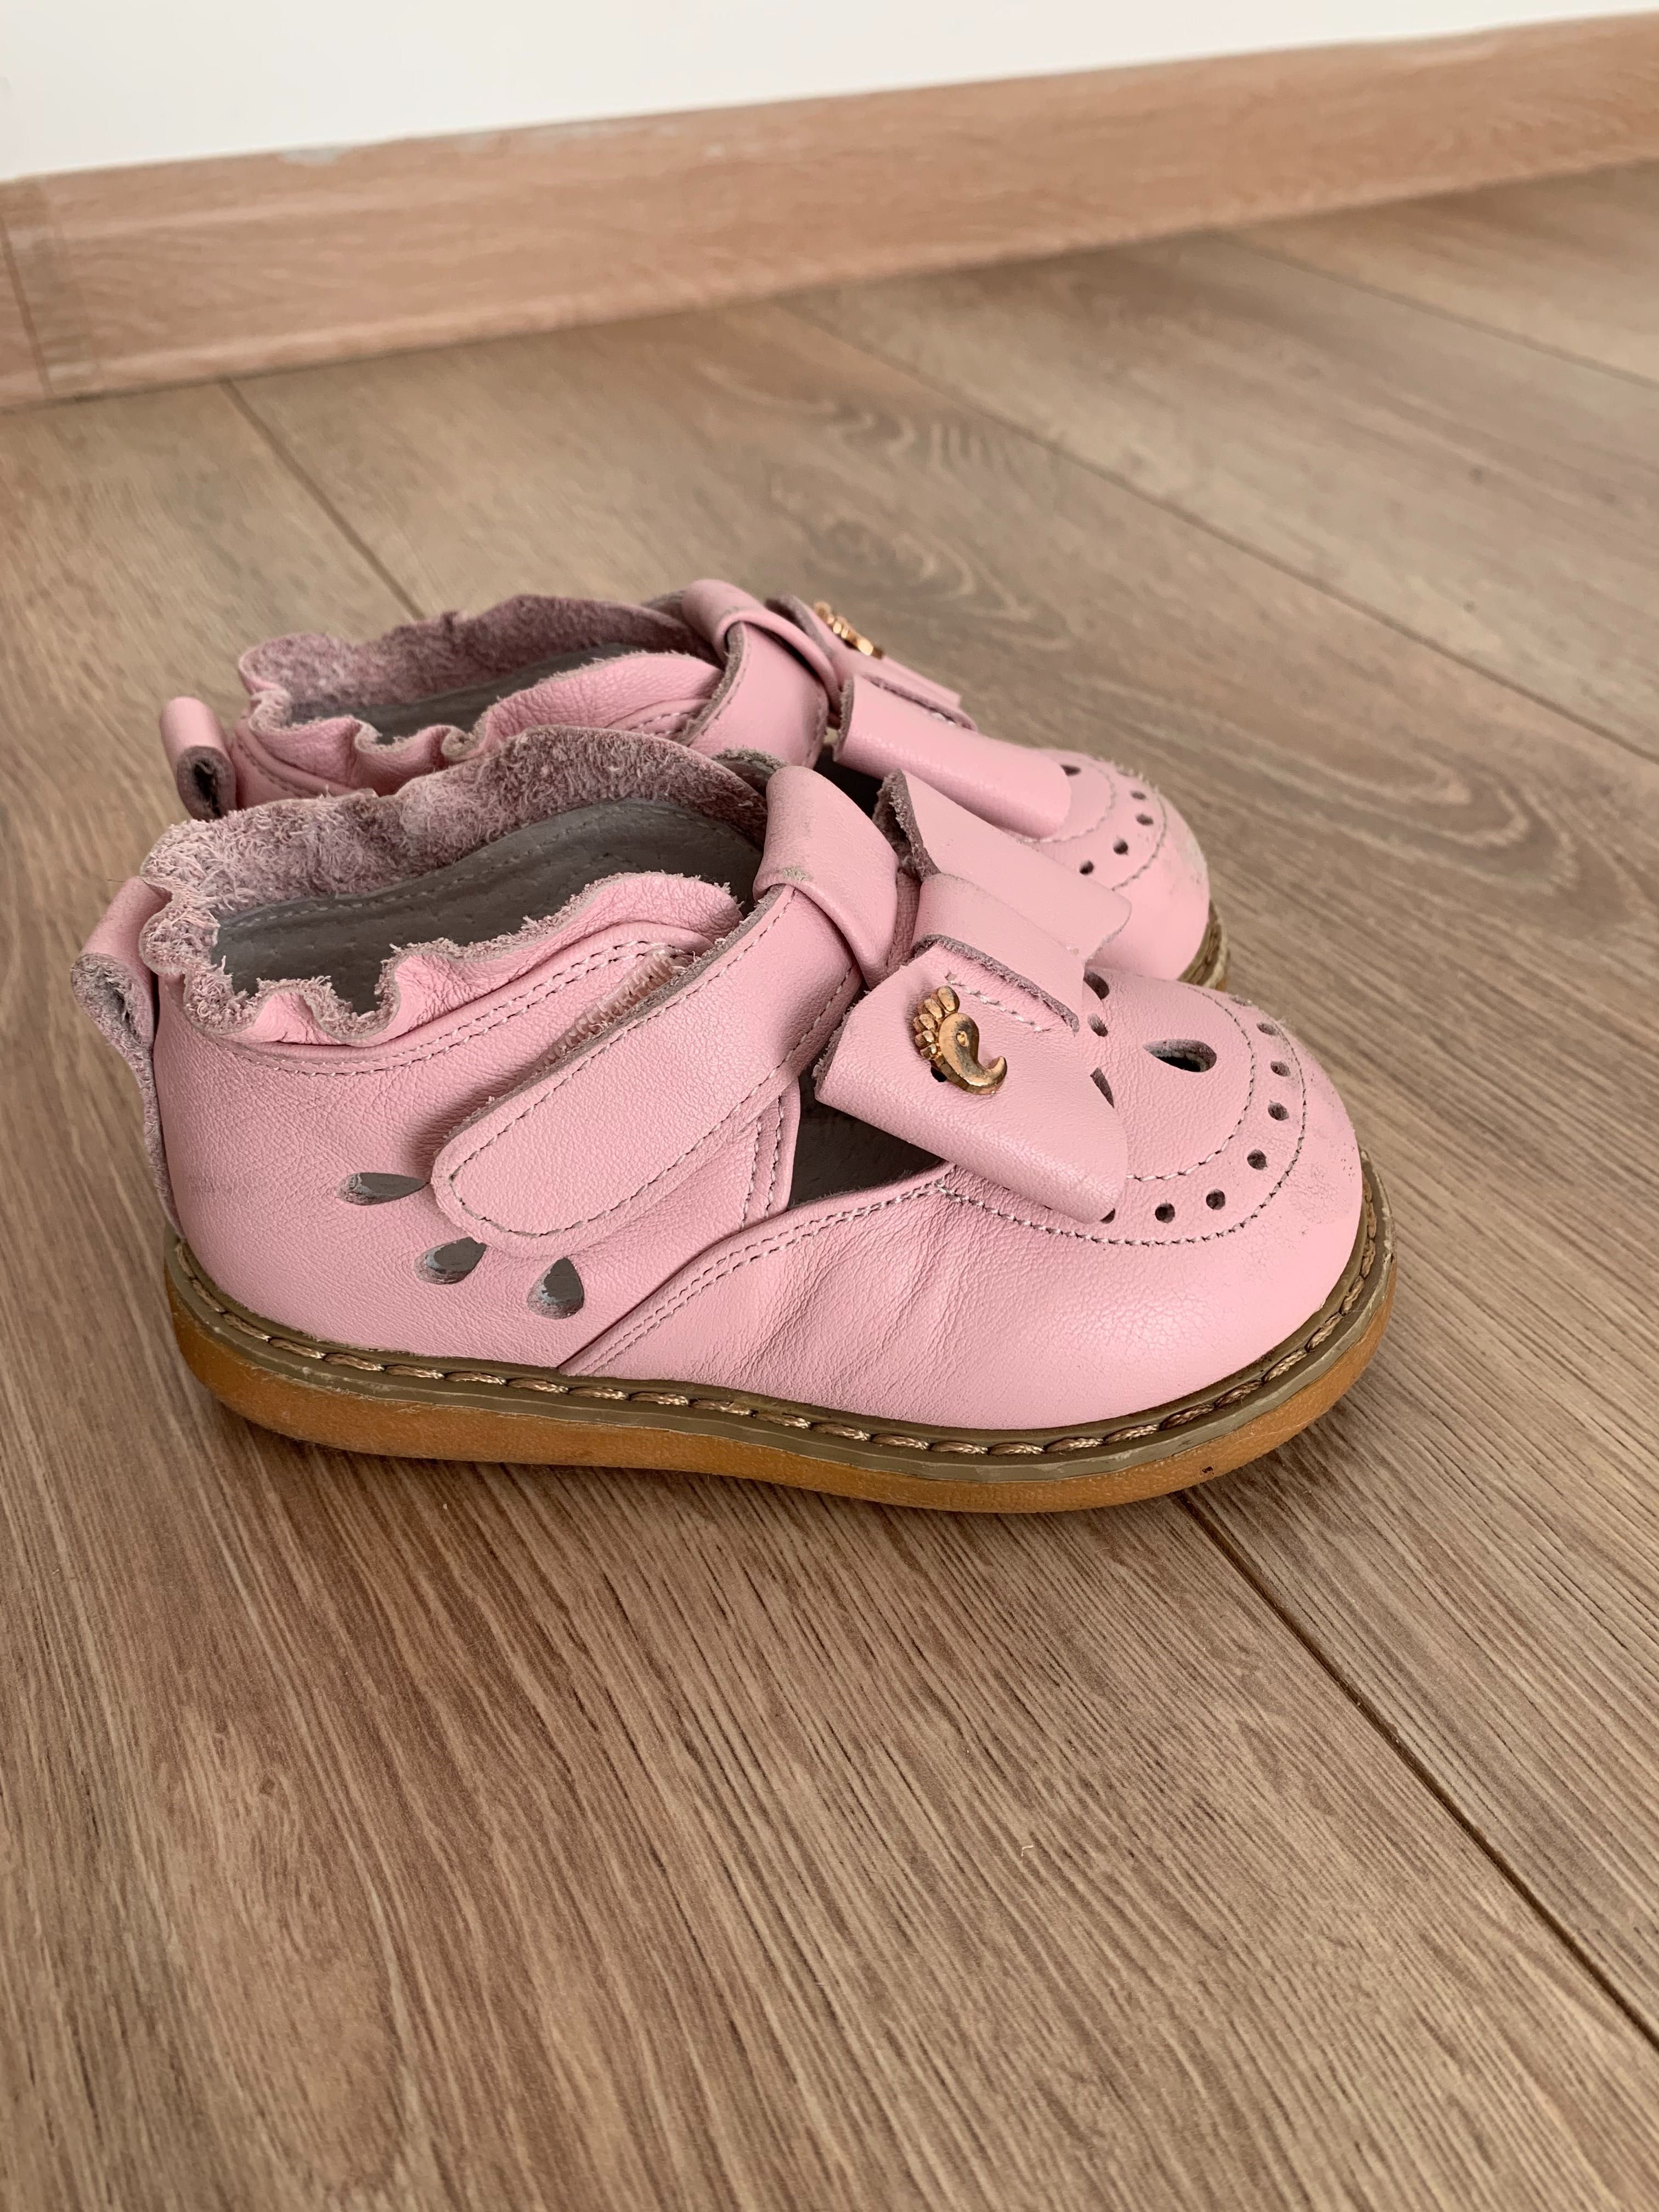 Pantofi fetite roz piele naturală mărimea 23